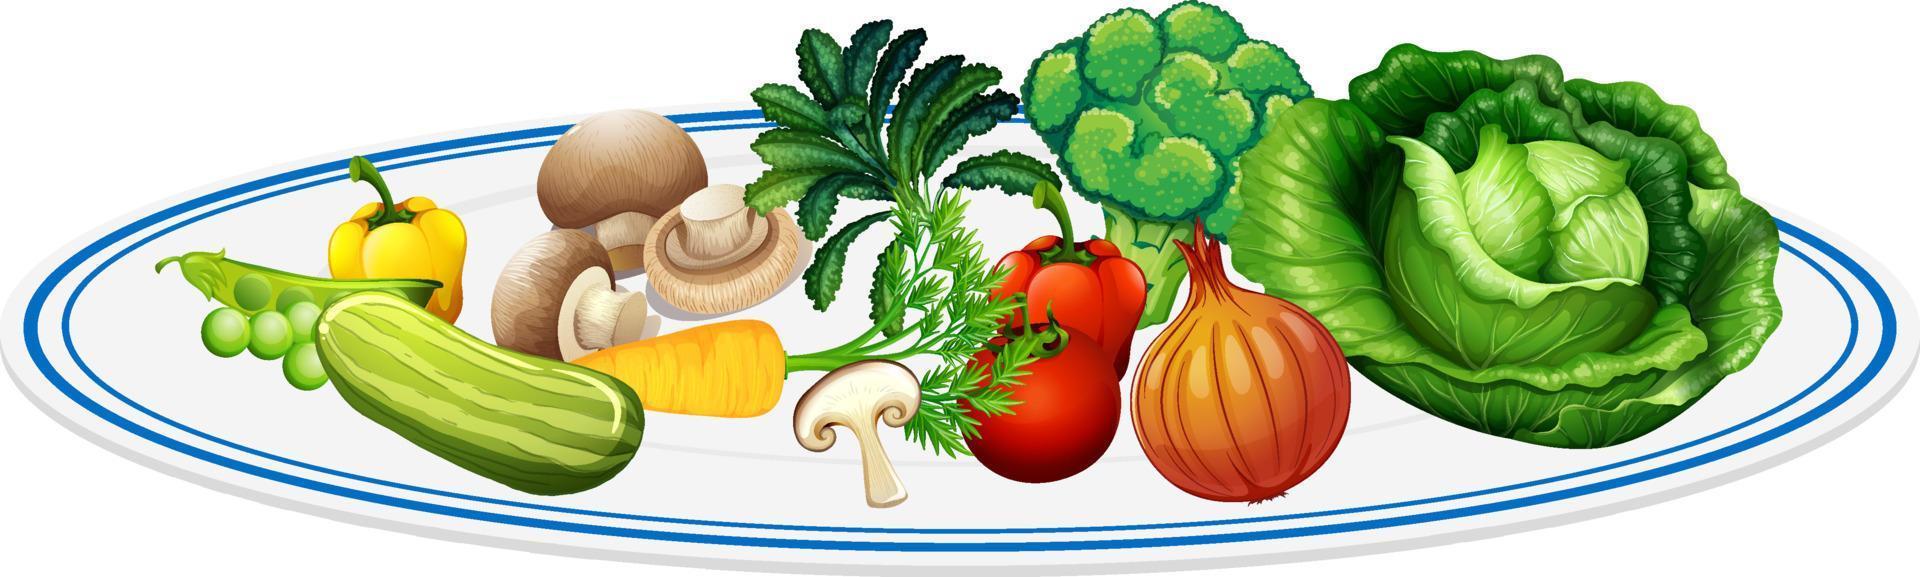 gezonde salade in een bord vector